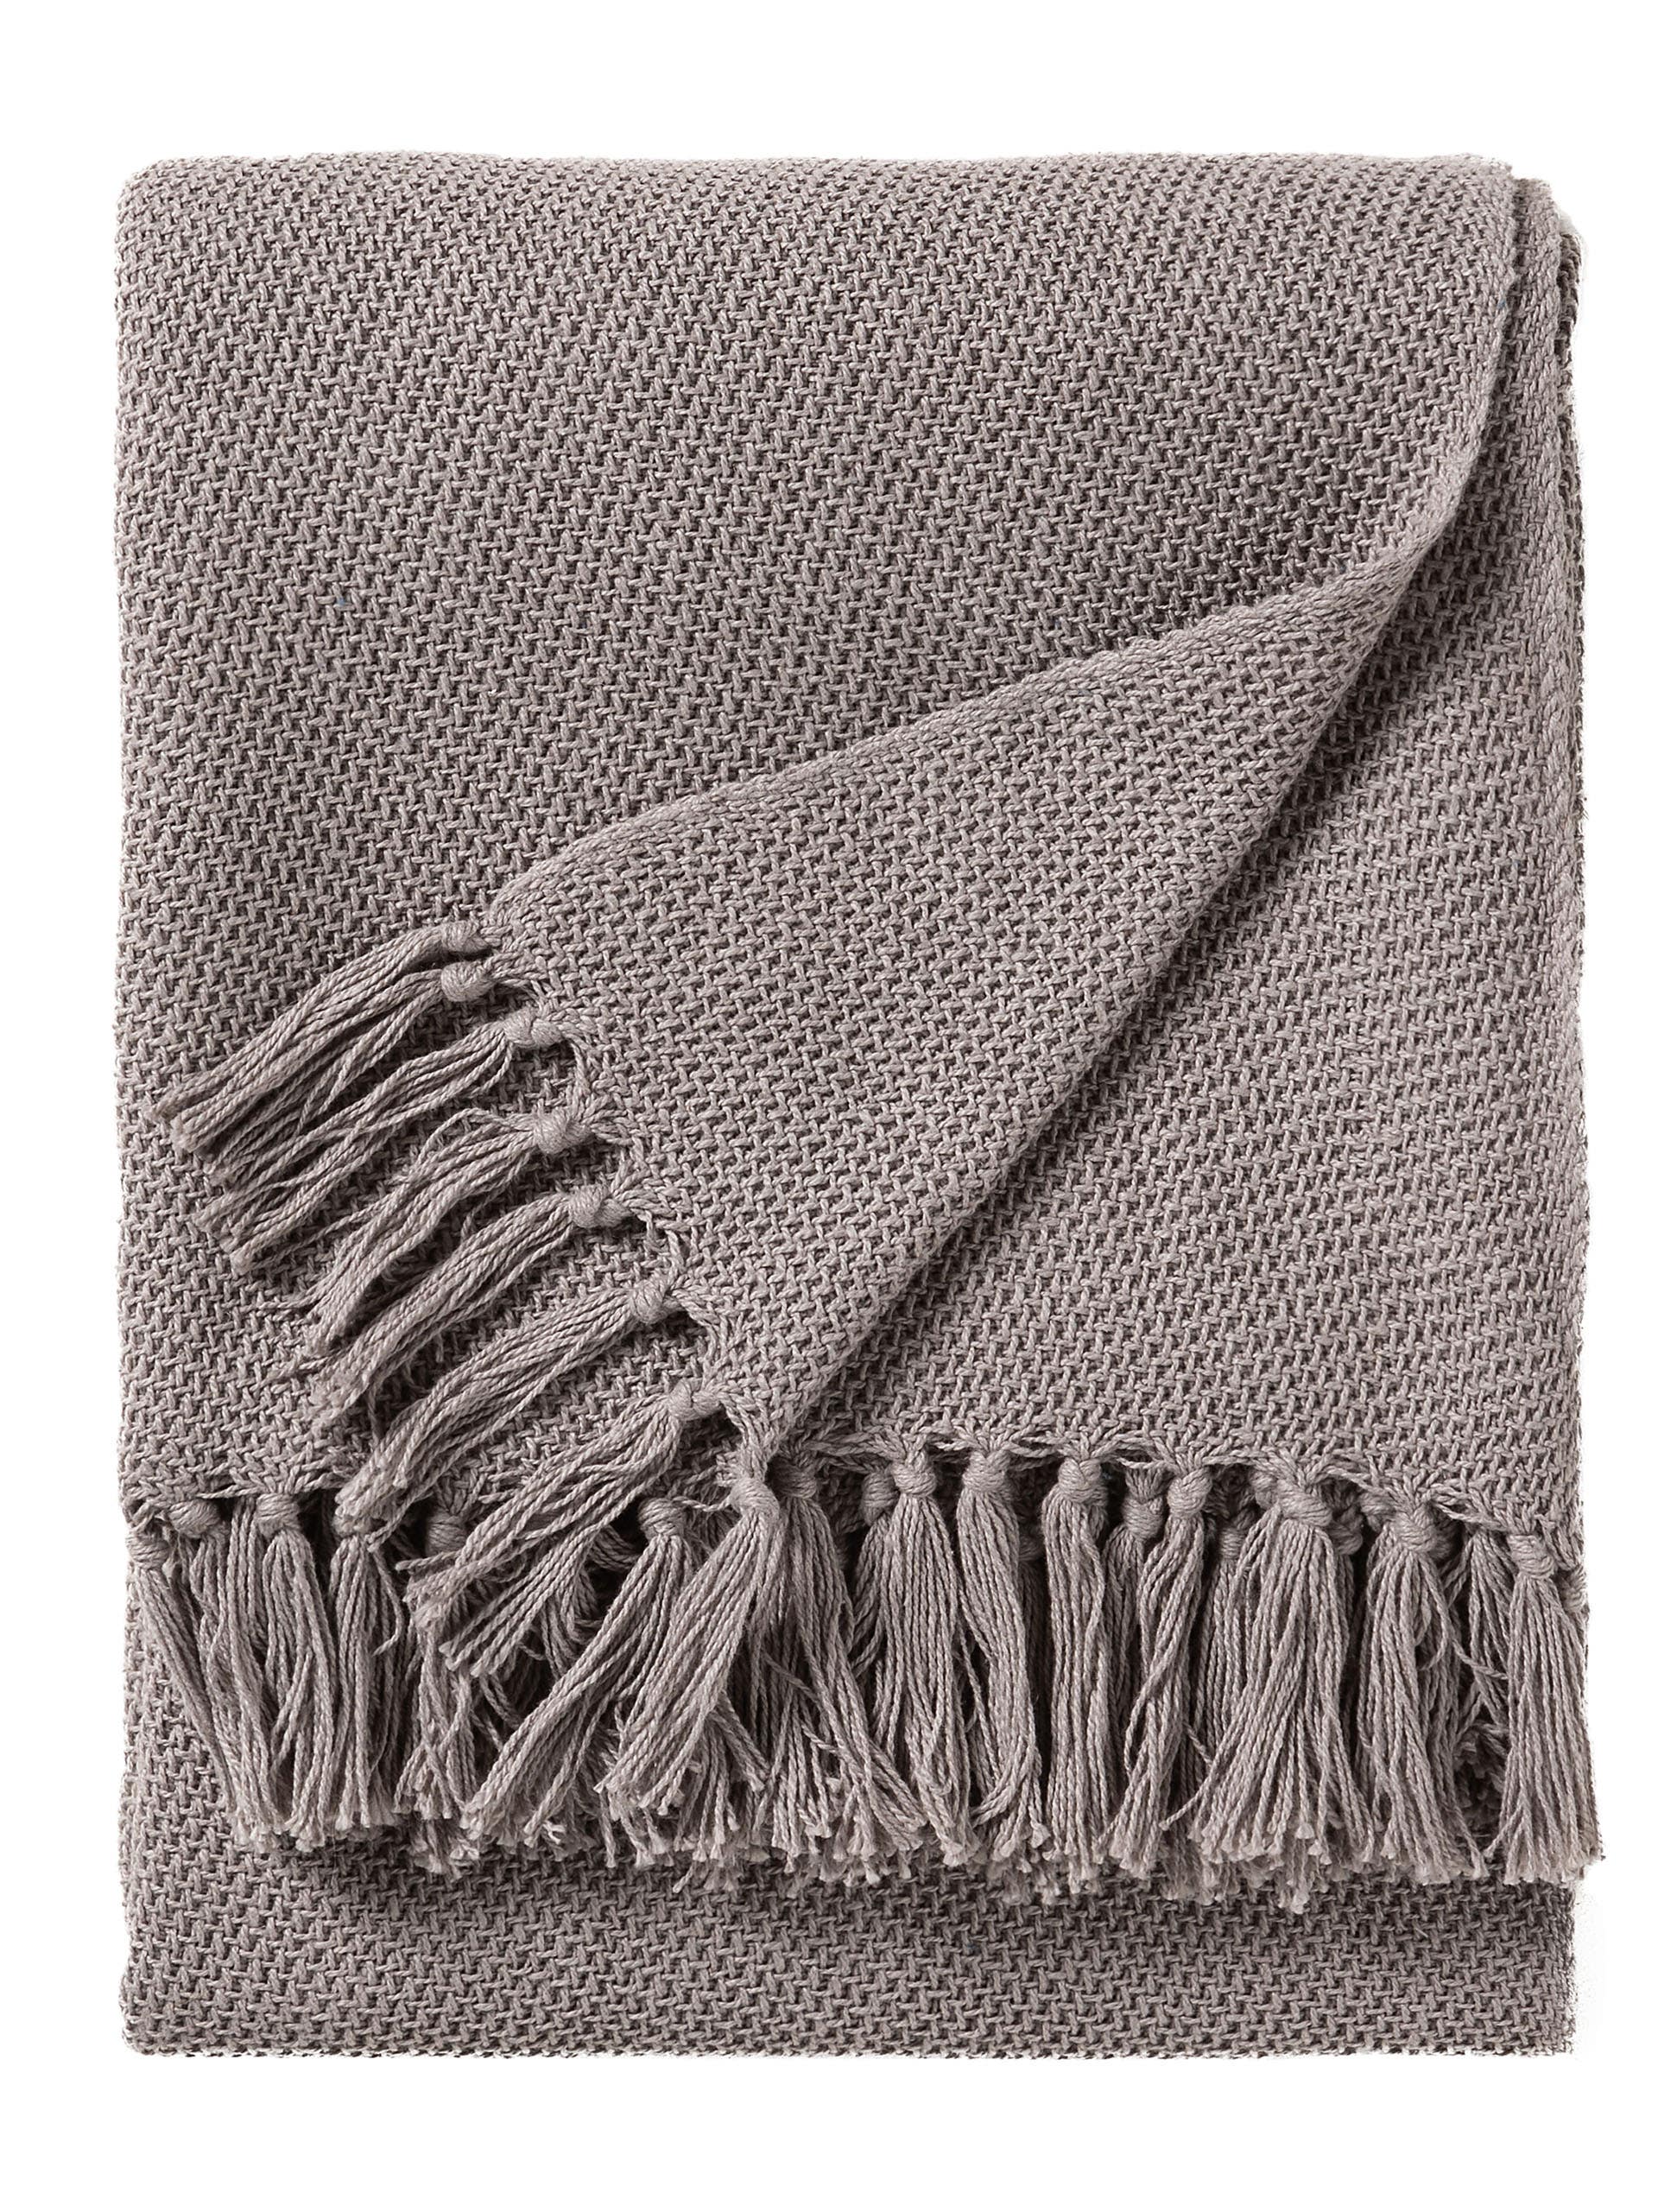 couverture en coton gris 125x150